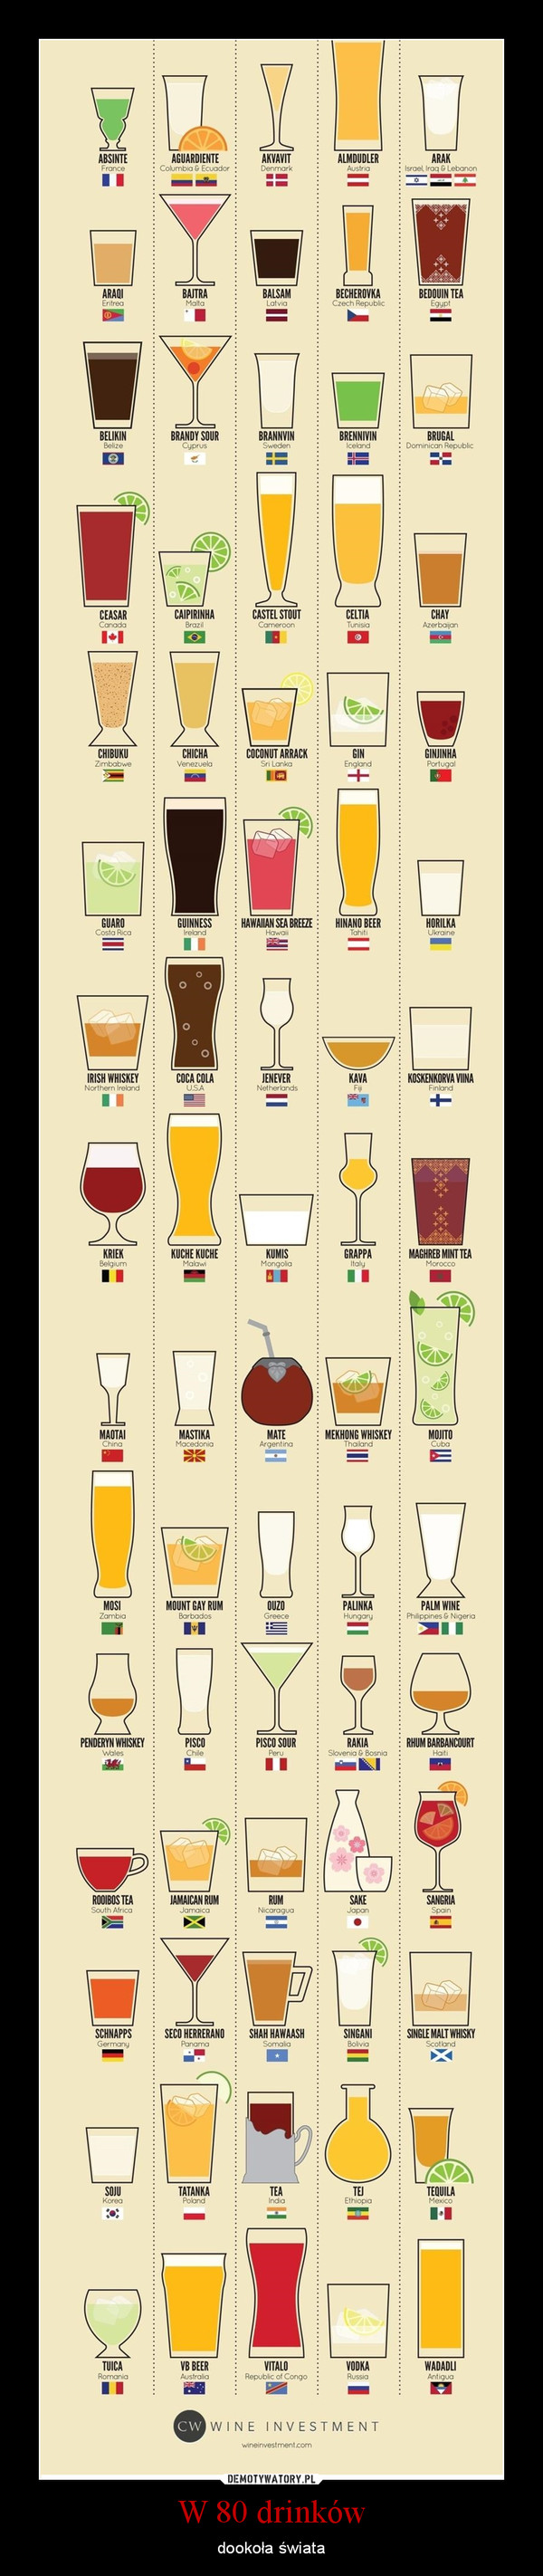 W 80 drinków – dookoła świata 